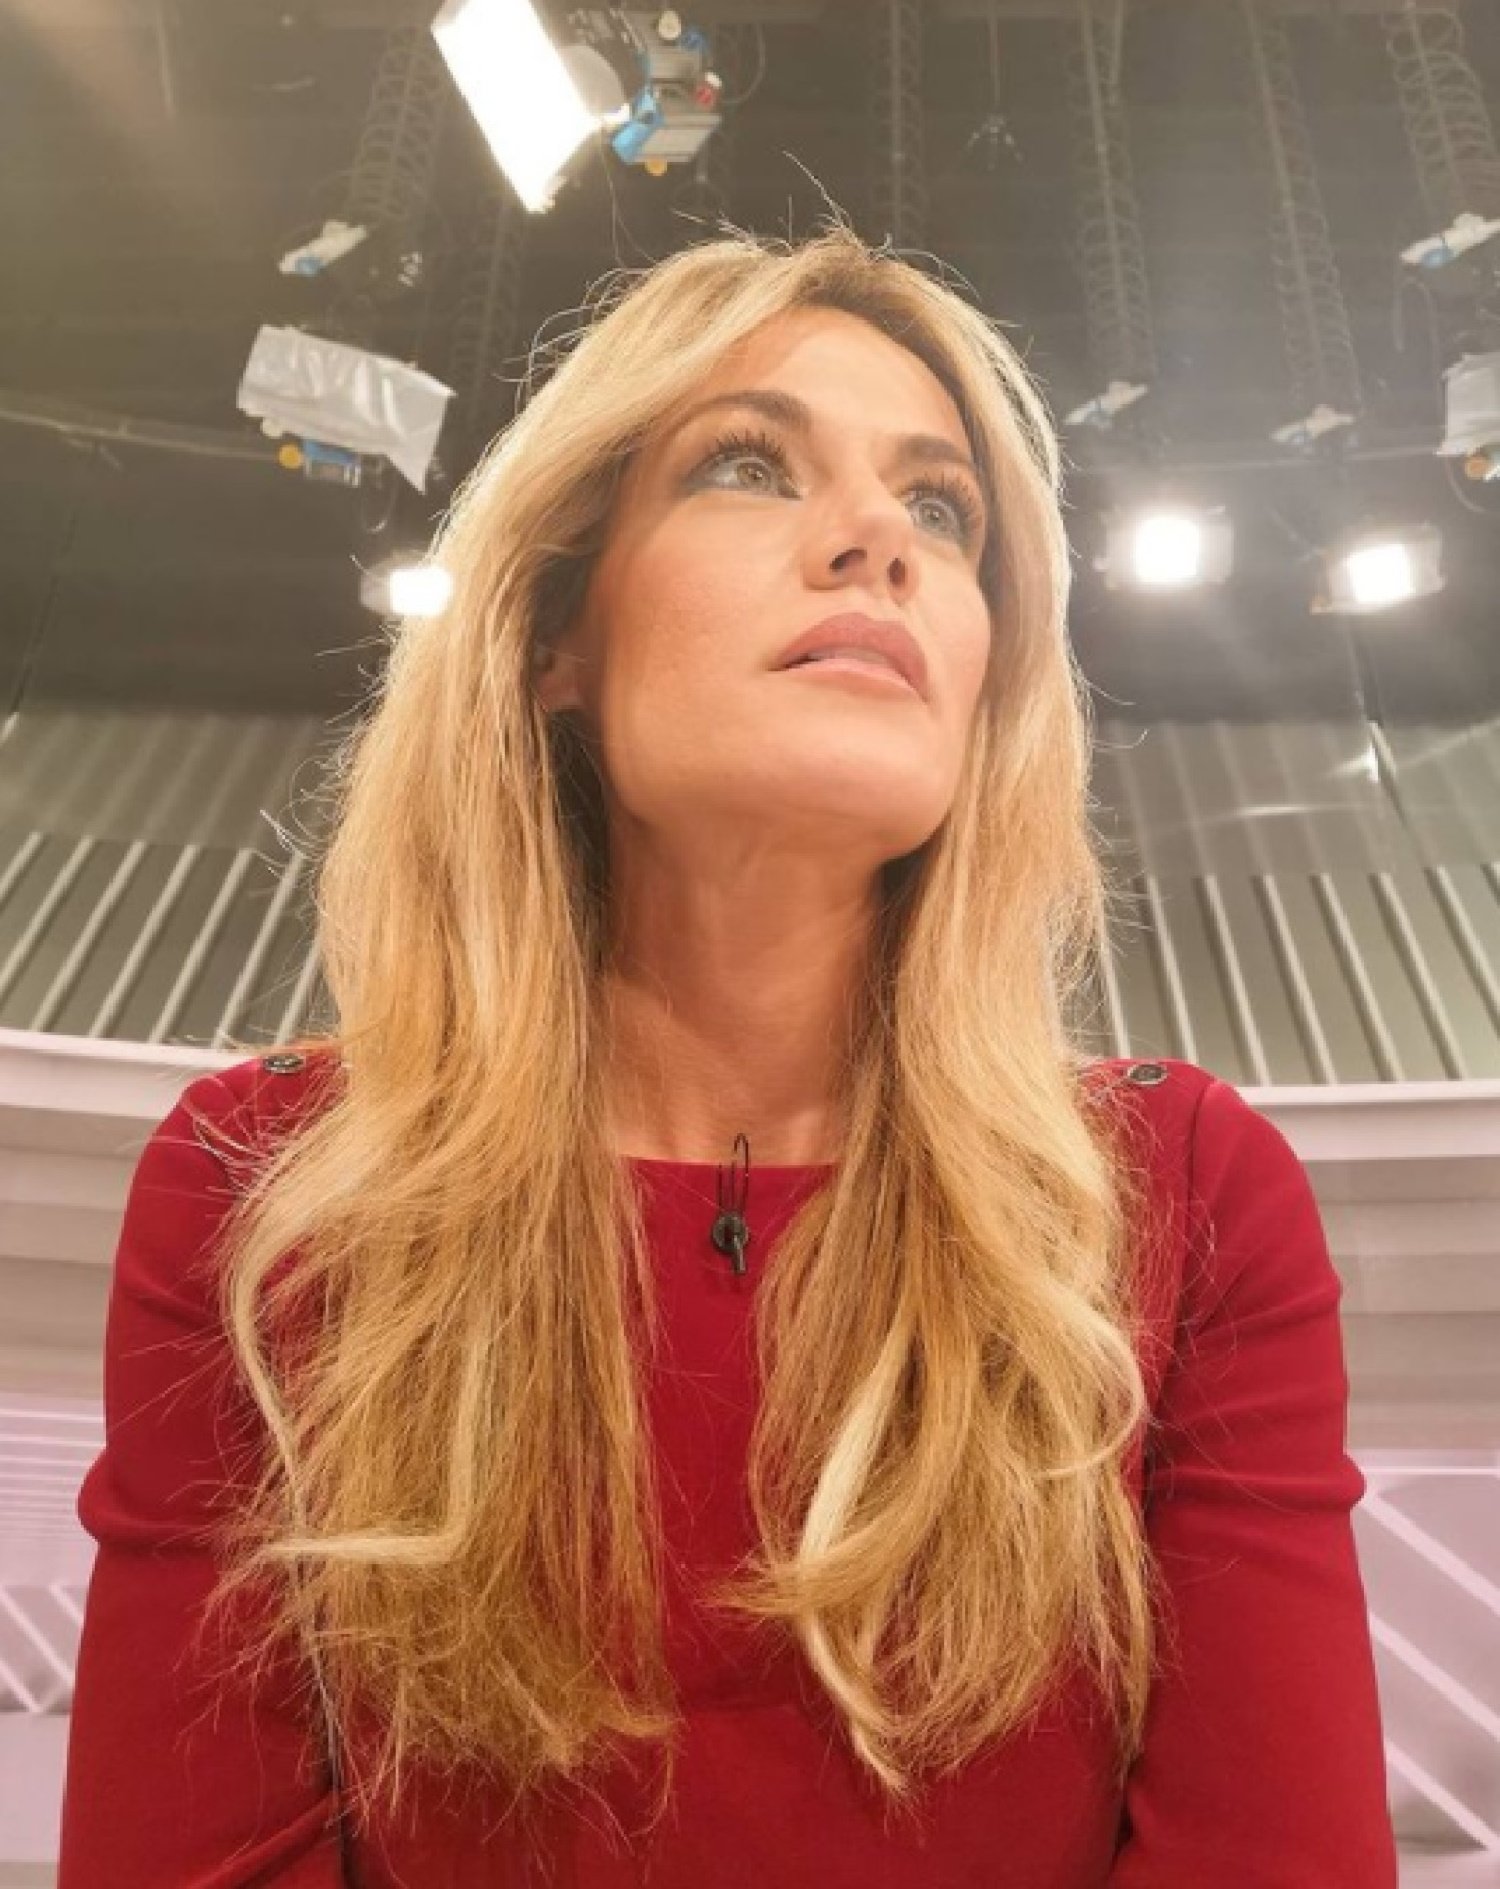 Vomitivo ataque machista a la presentadora Rocío Delgado en plena calle: "Asco"